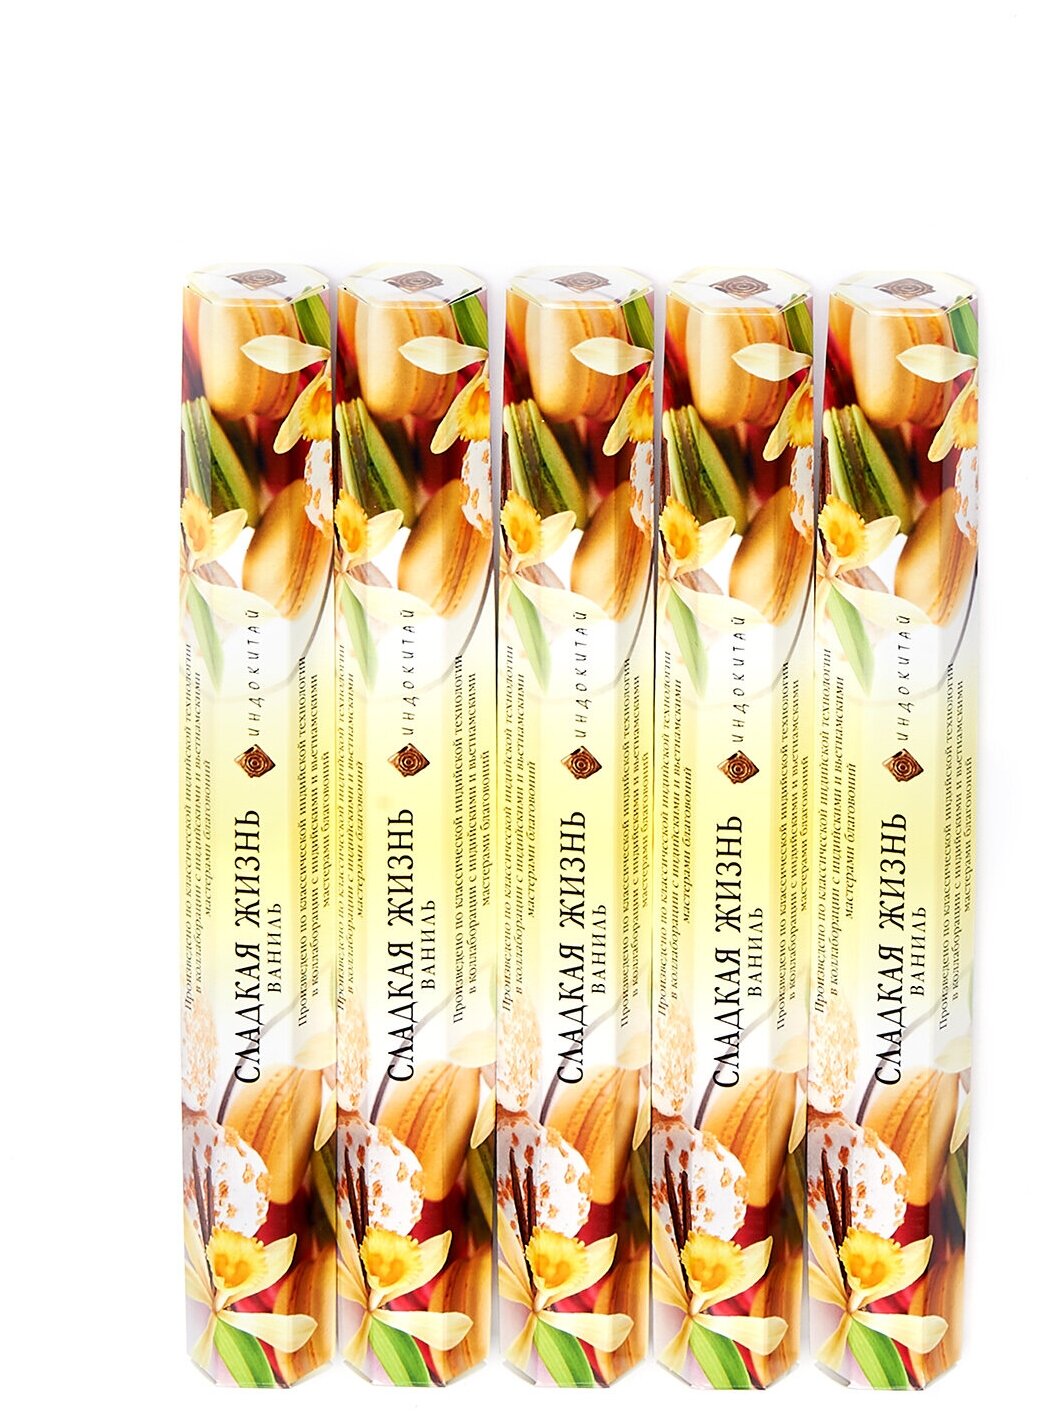 Аромапалочки-шестигранники"Индокитай" сладкая жизнь с ароматом ваниль, набор из 5 упаковок по20шт в каждой, всего 100штук